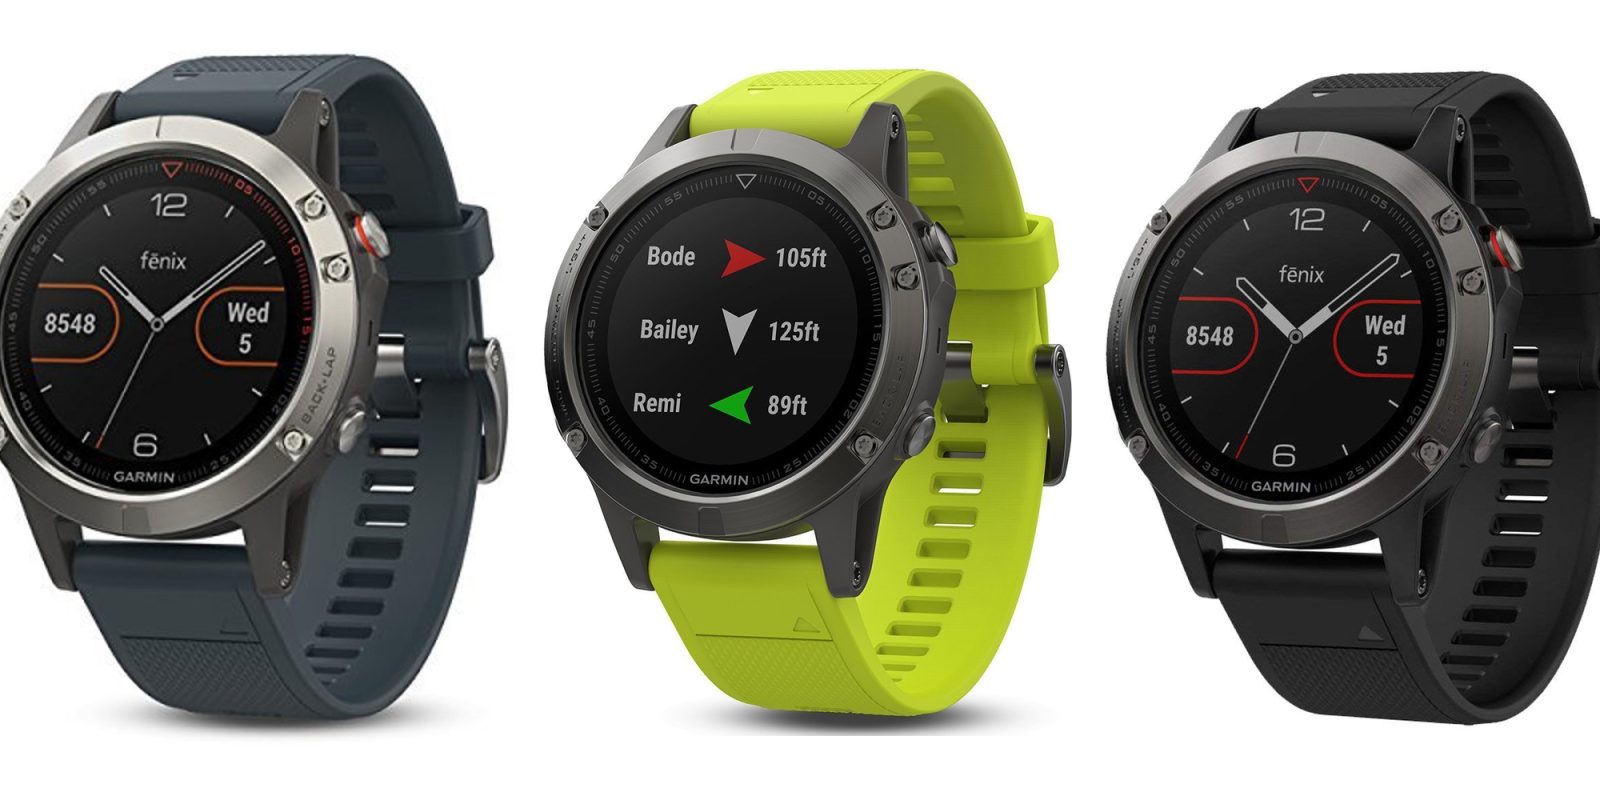 Garmin Fenix 5 GPS Smartwatch gets a $150 price cut to new Amazon low ...